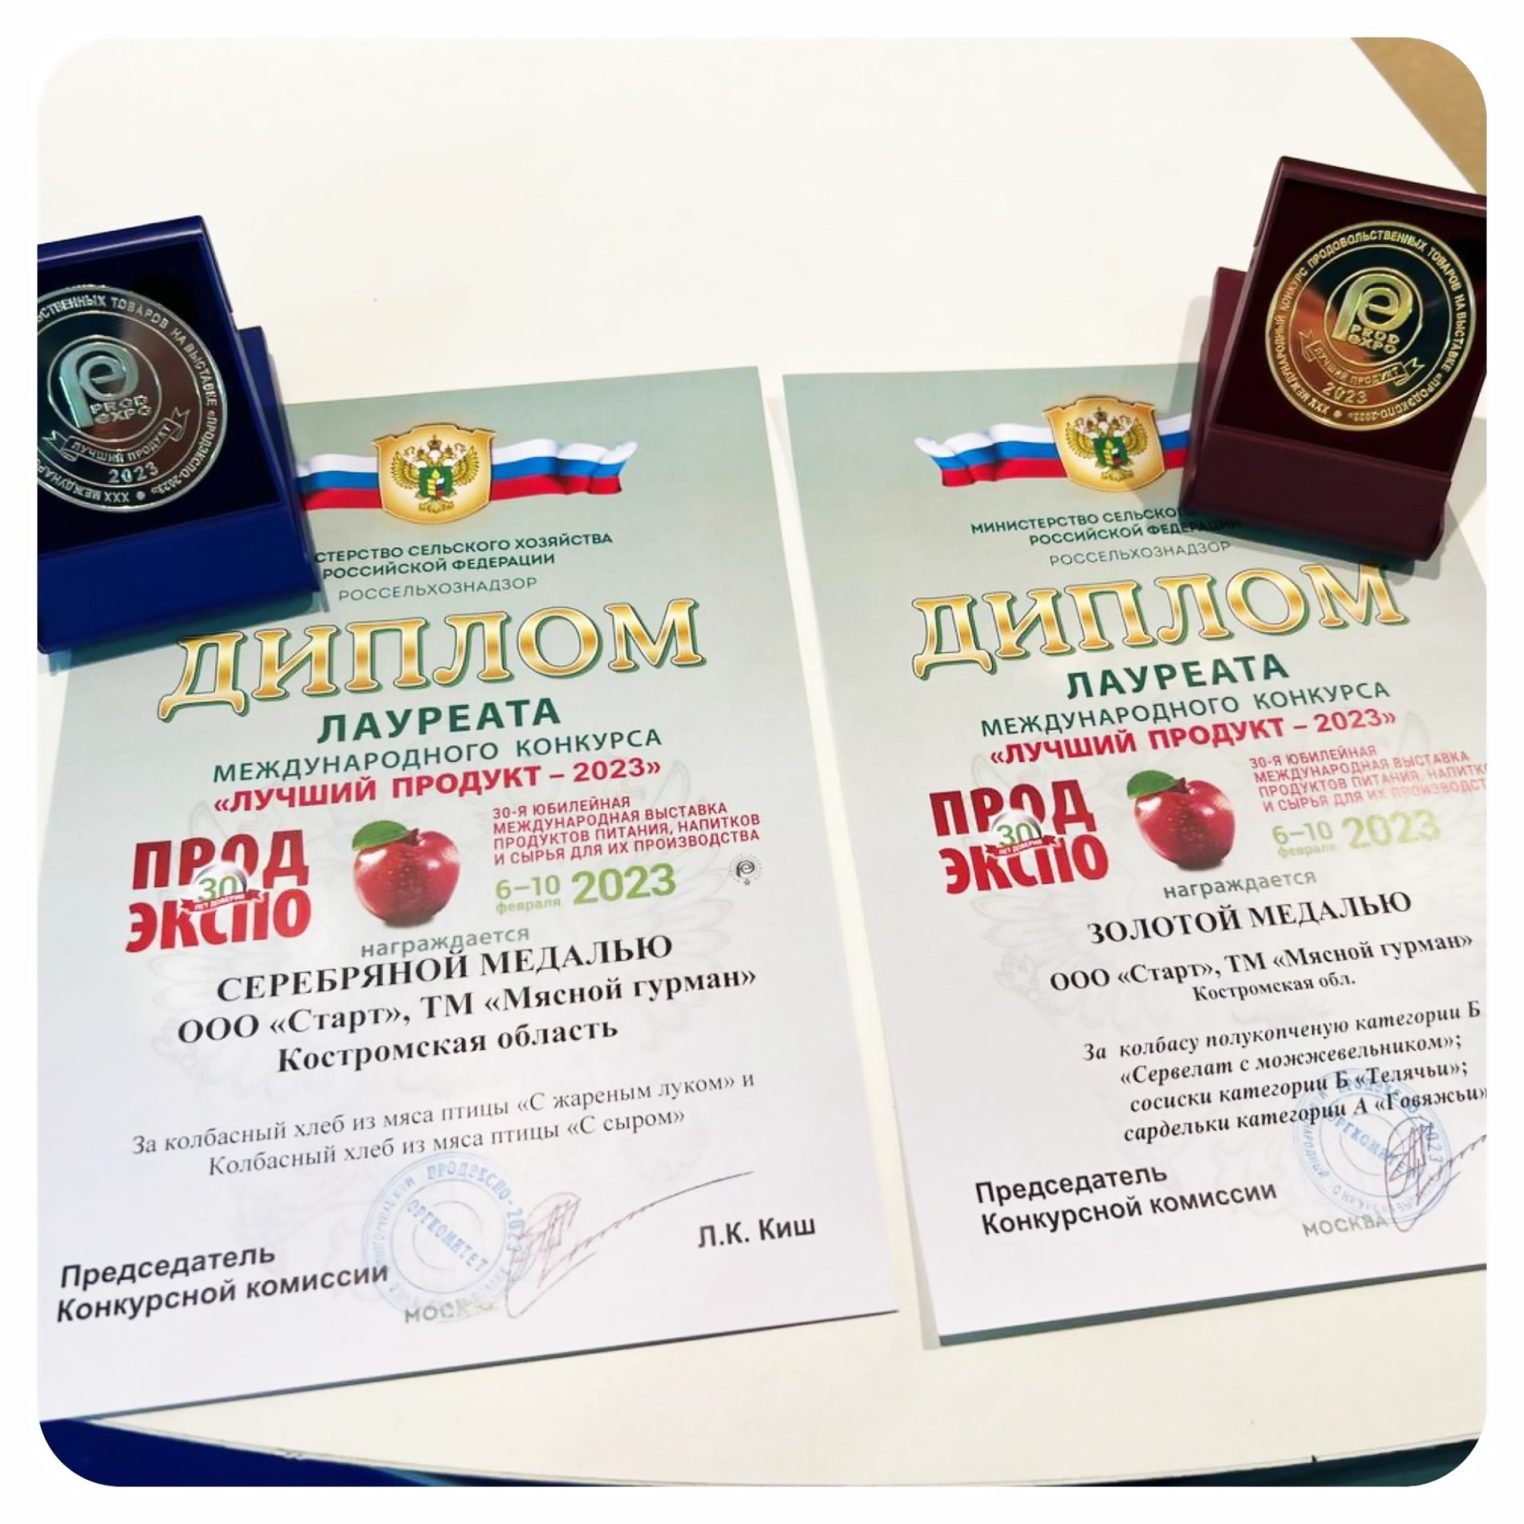 Вкусная победа: «Мясной Гурман» взял золото на выставке ПРОДЭКСПО-2023 в Москве